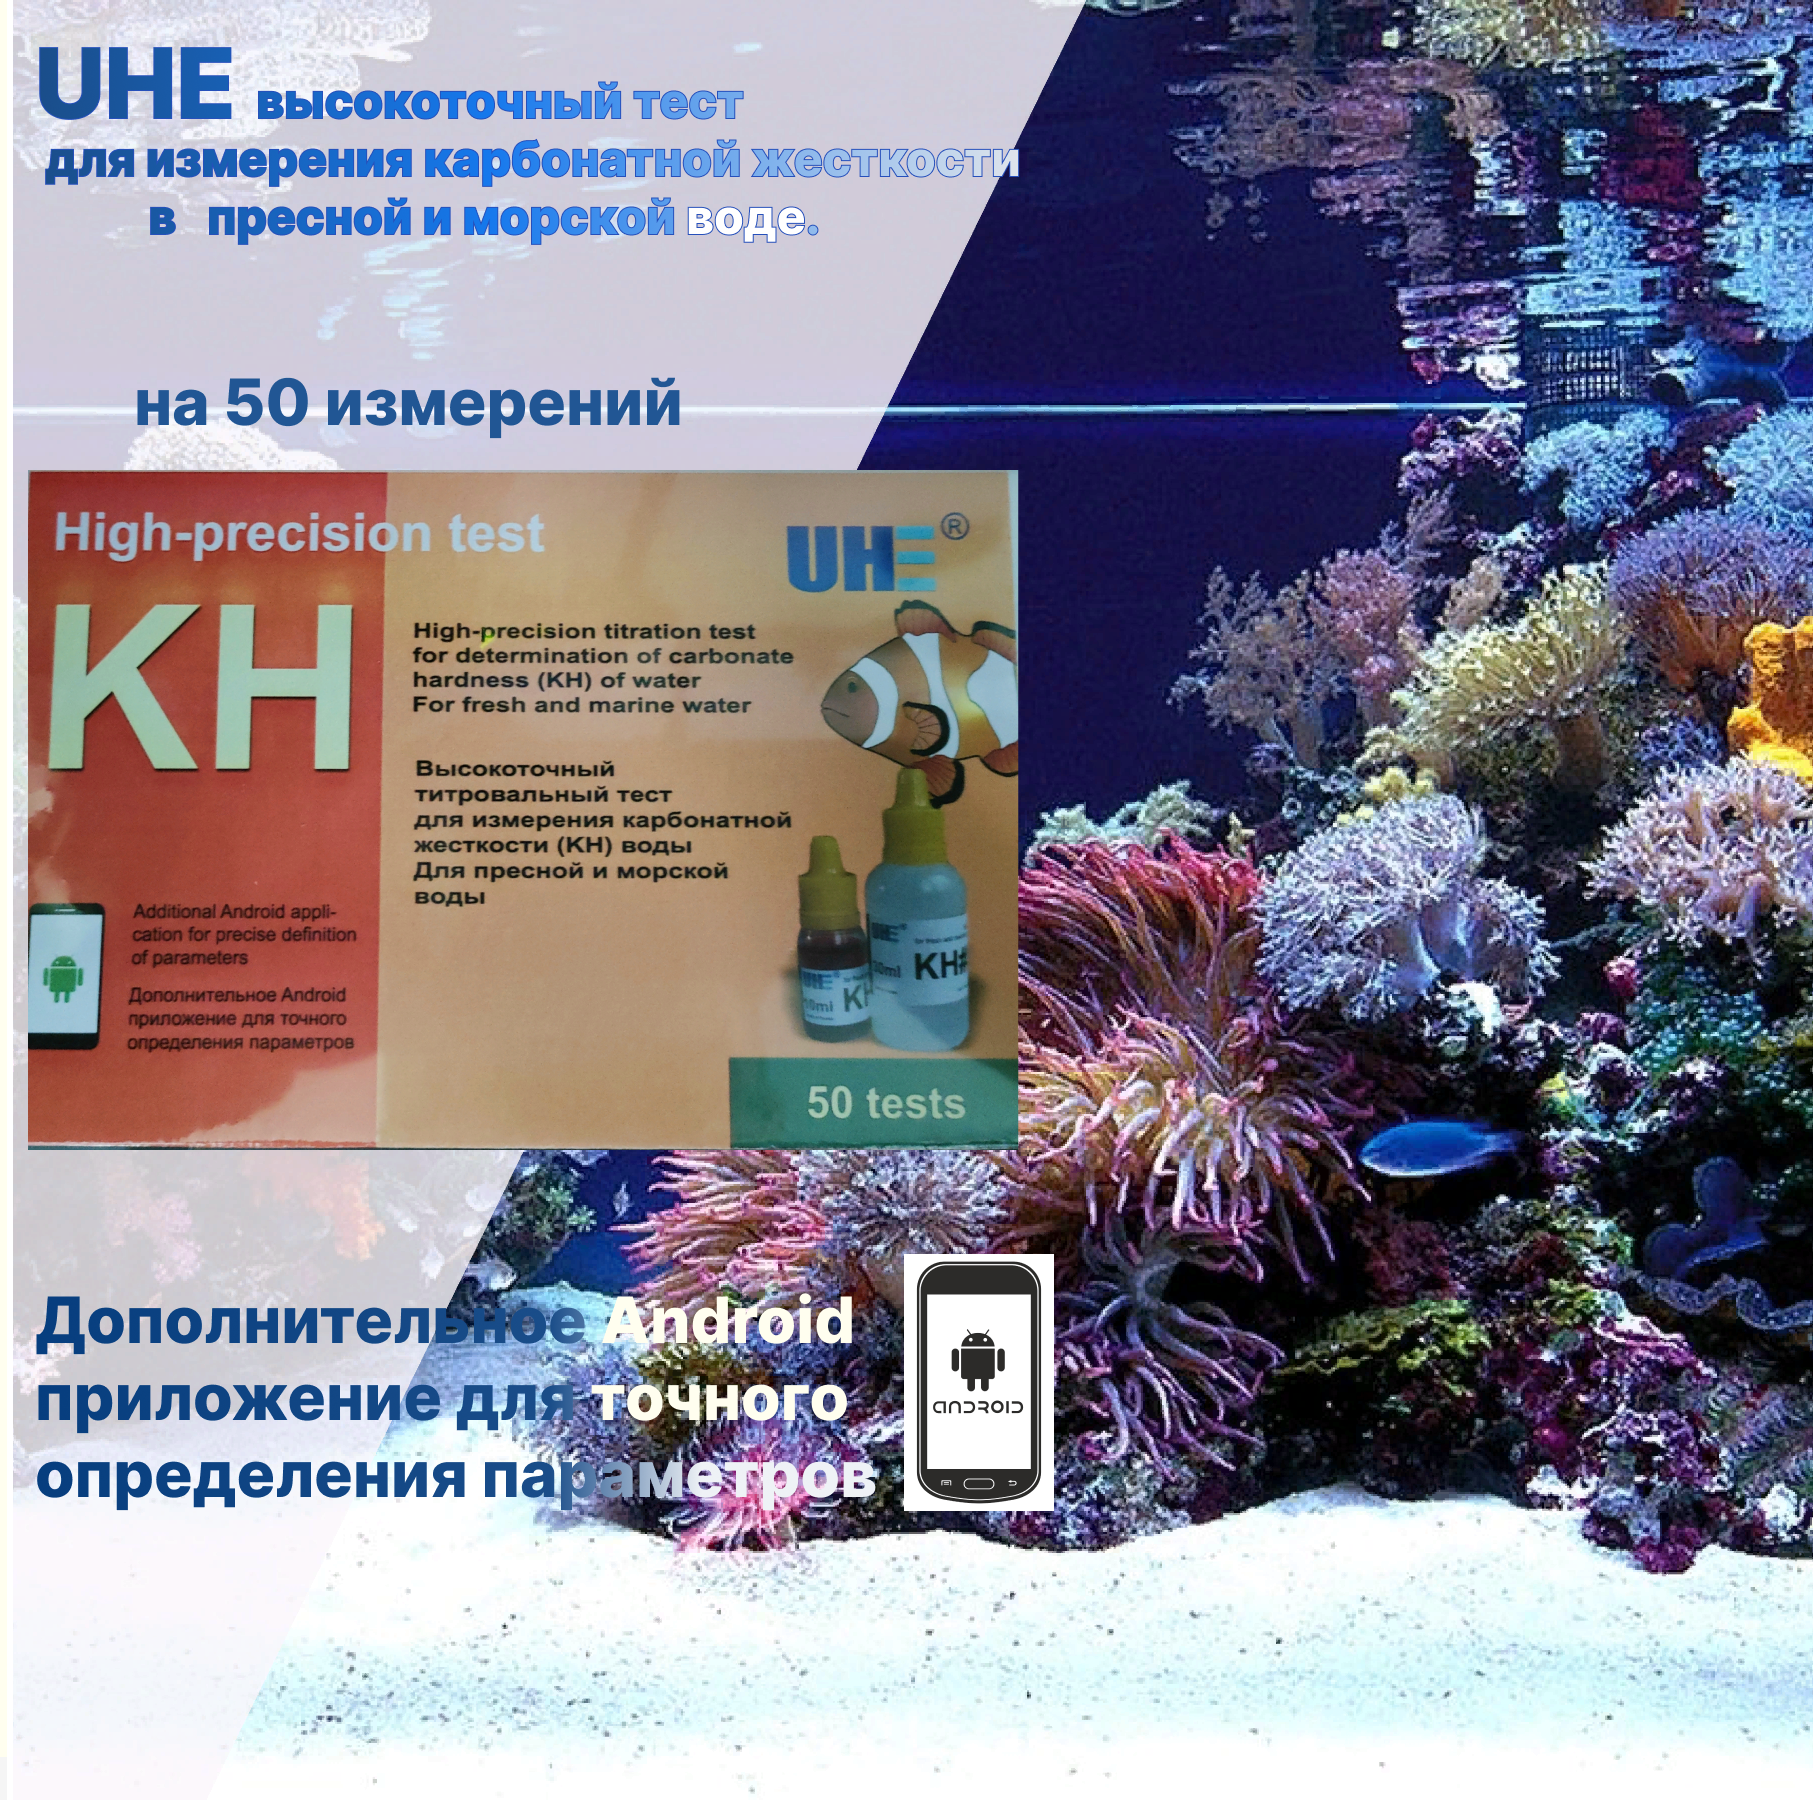 UHE KH test - капельный тест набор для определения карбонатной жесткости (КН) воды (содержания карбонатов в воде).